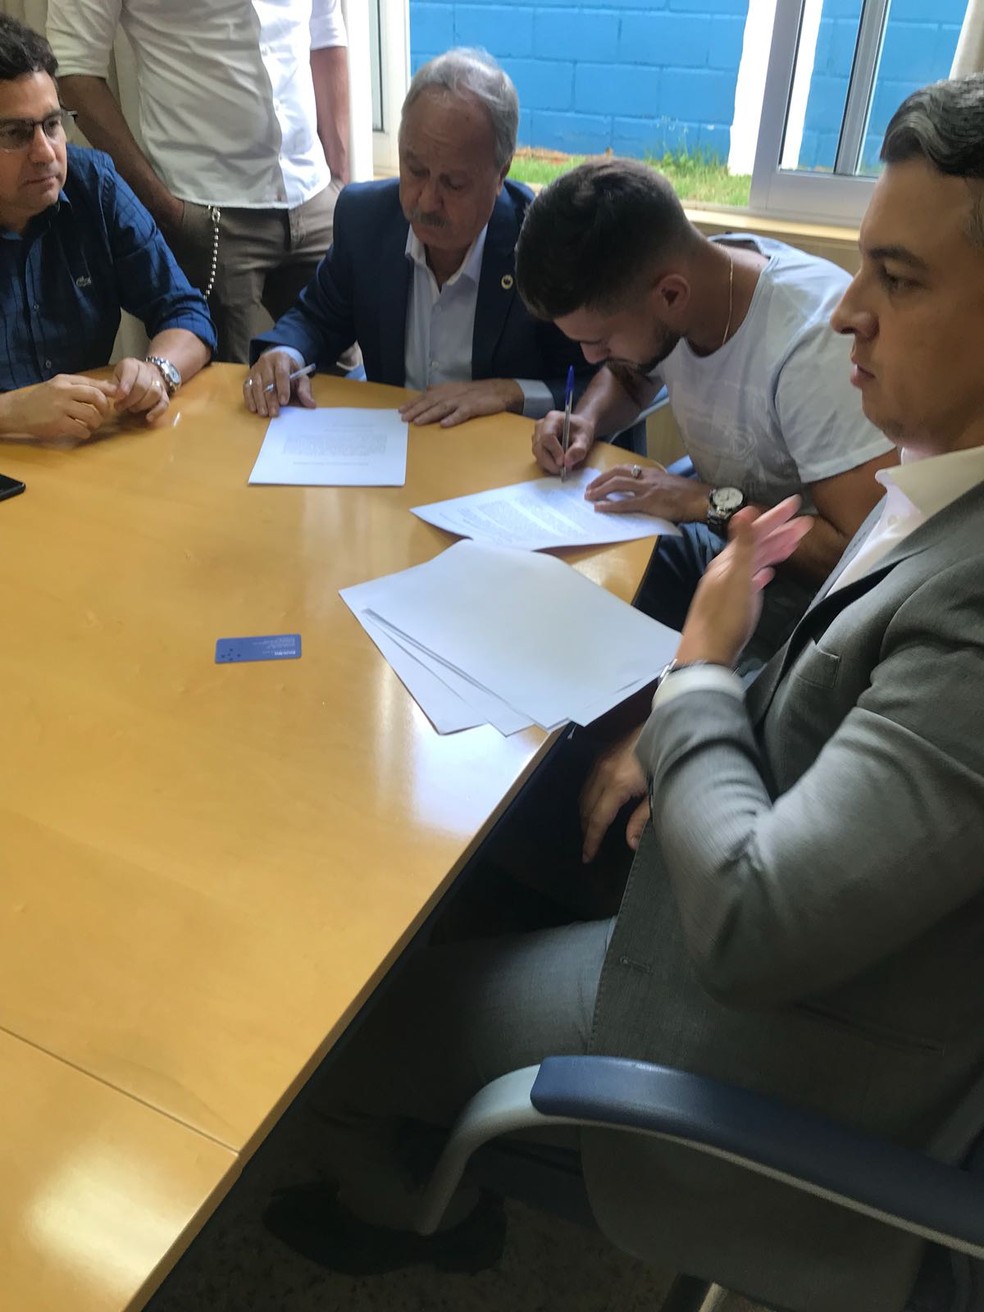 Arrascaeta assina renovação de contrato com o Cruzeiro (Foto: Arquivo pessoal)